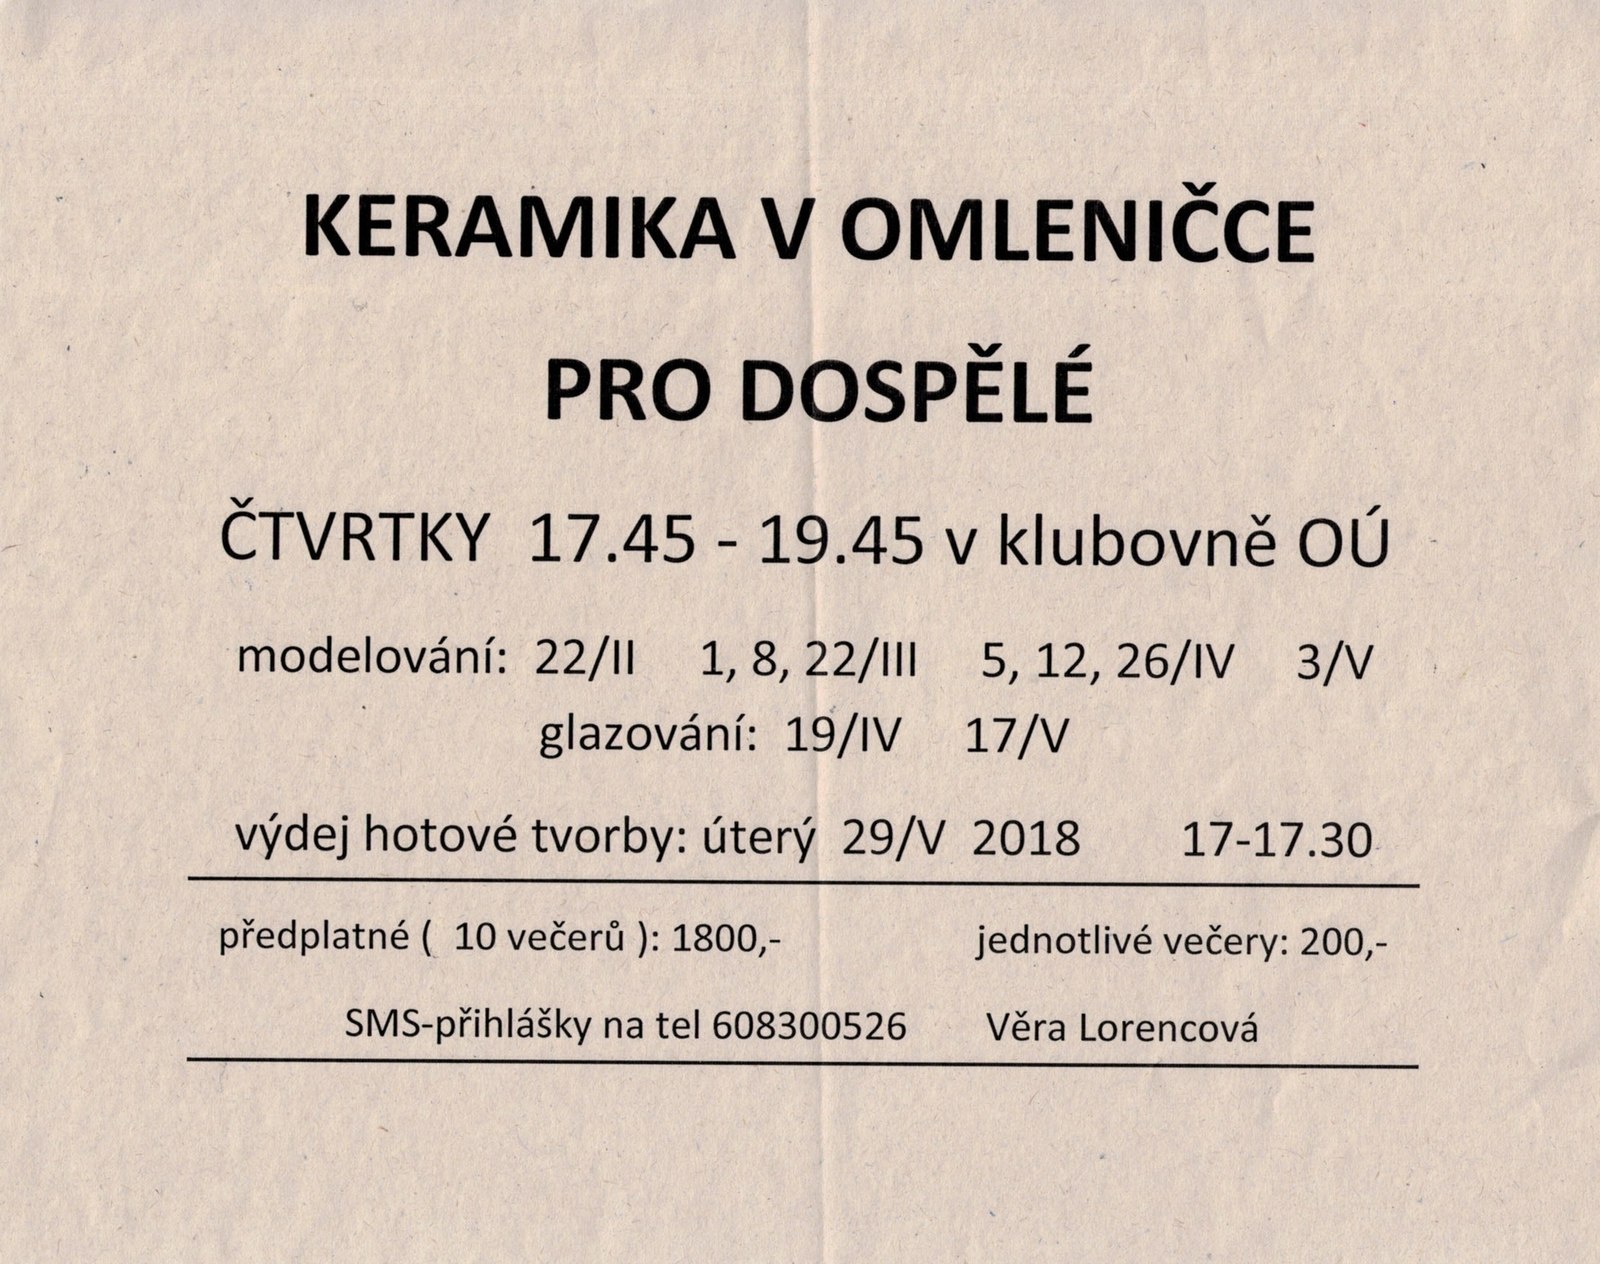 Keramika v Omleničce pro dospělé - II. pol. 2018